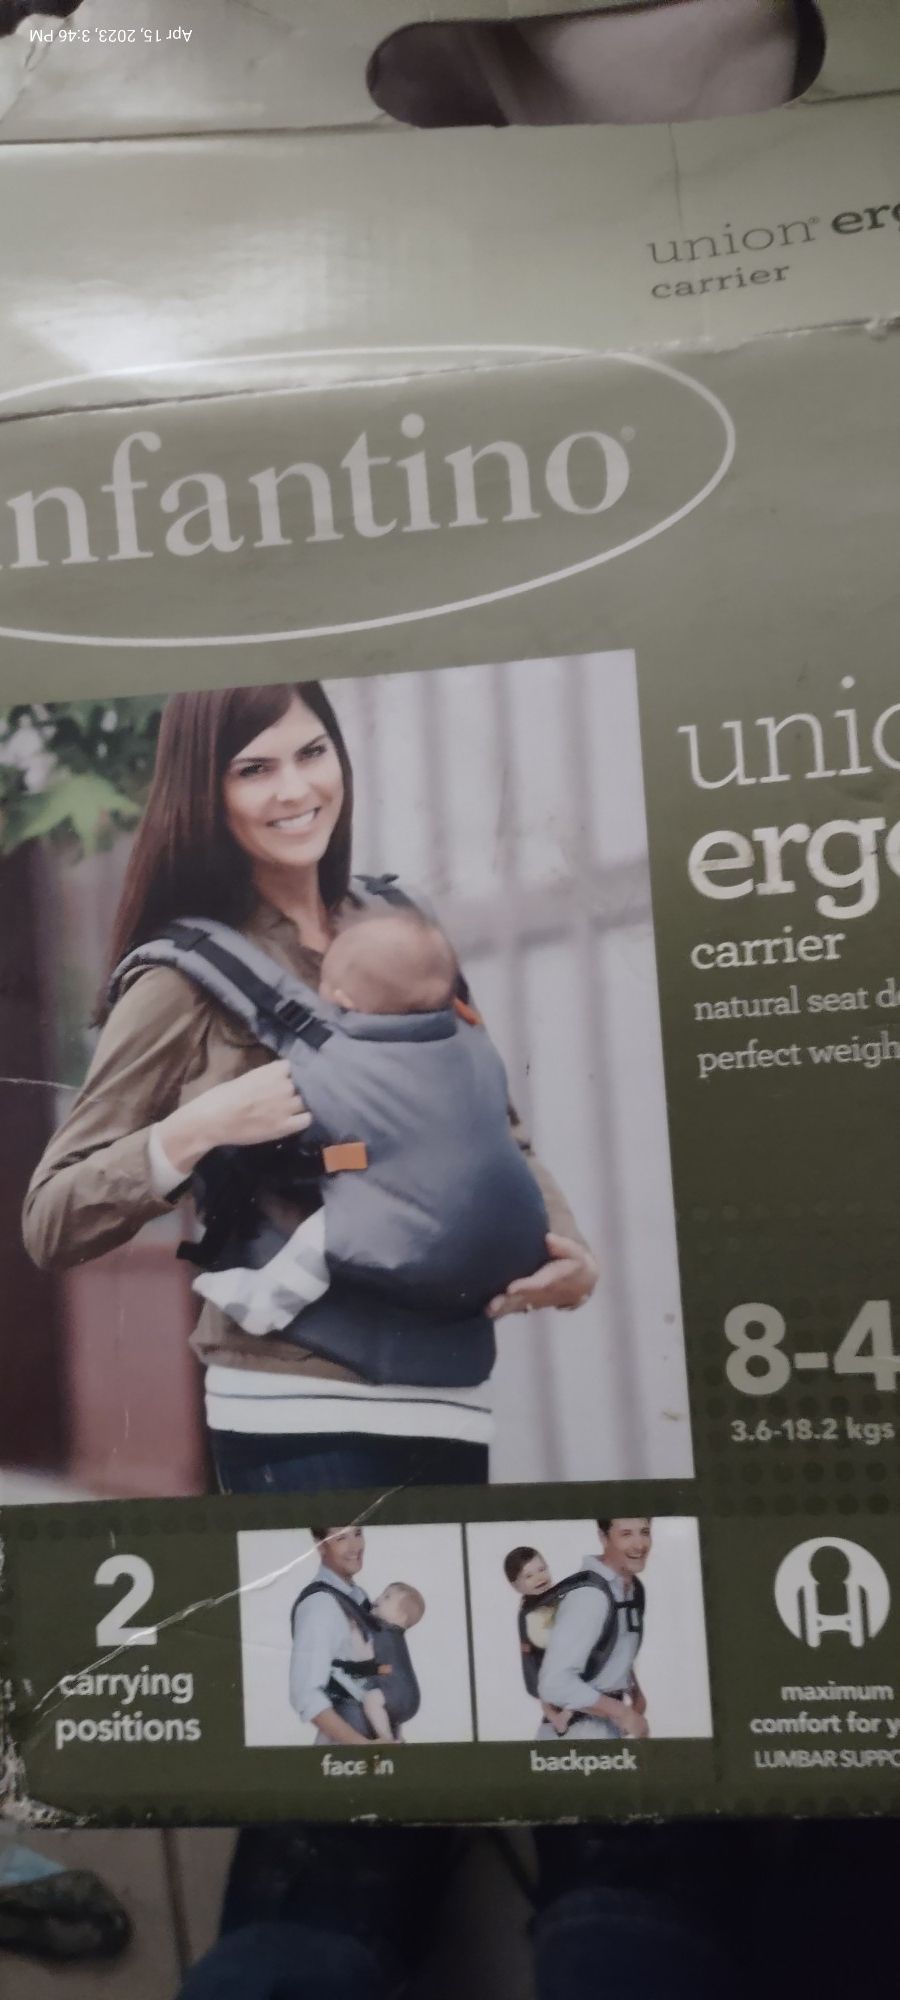 Union Ergonomic infant carrier